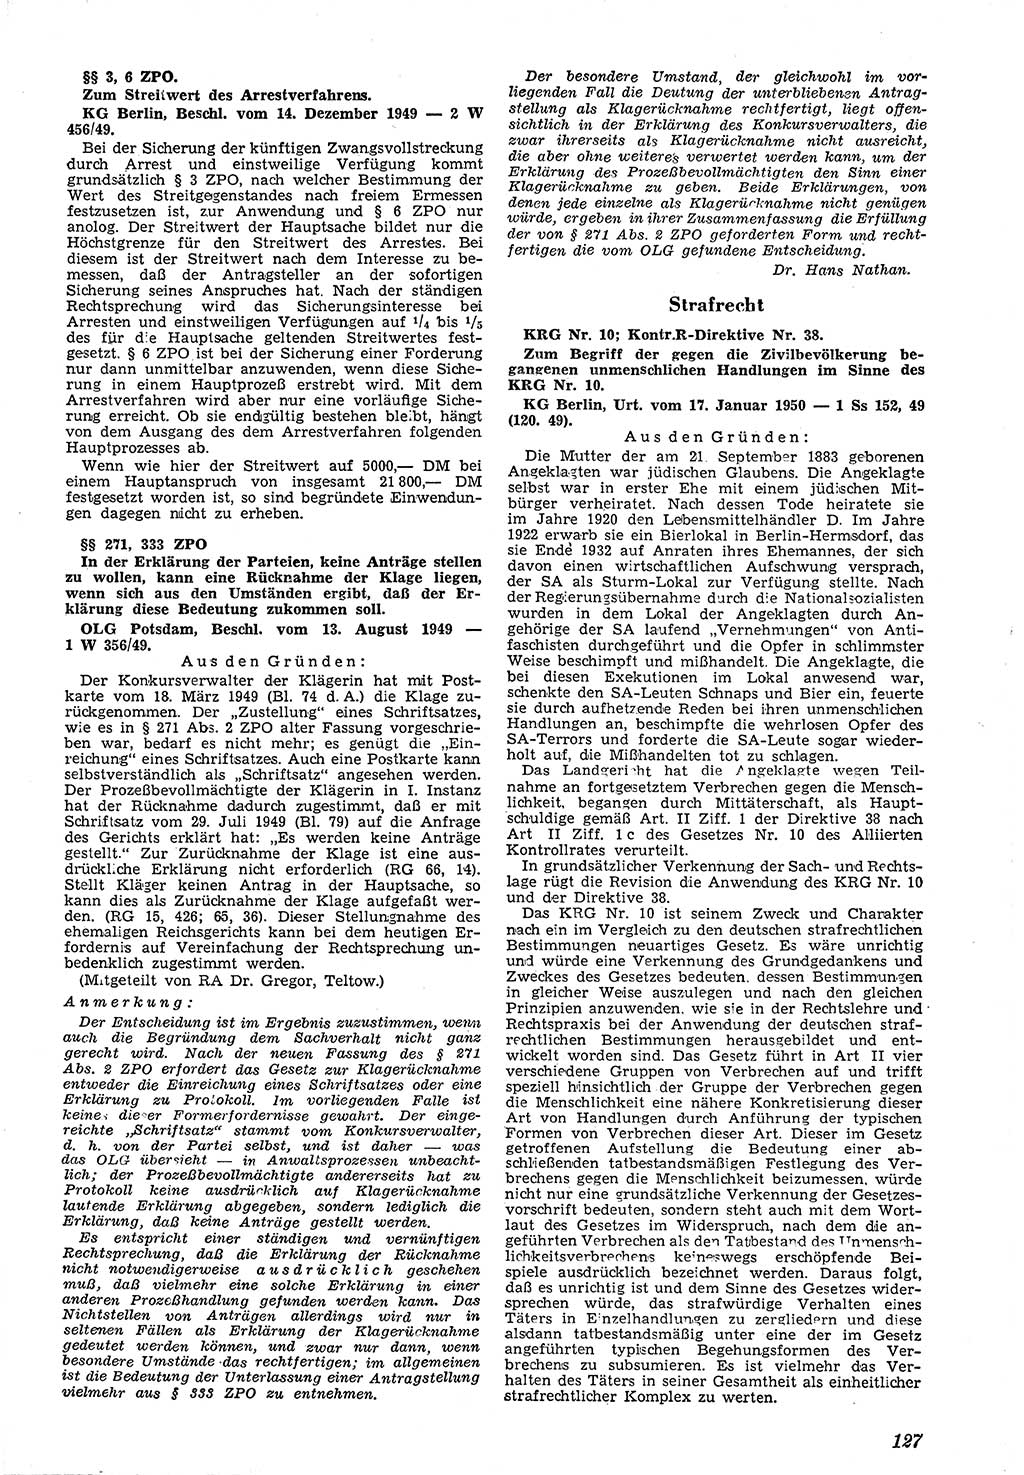 Neue Justiz (NJ), Zeitschrift für Recht und Rechtswissenschaft [Deutsche Demokratische Republik (DDR)], 4. Jahrgang 1950, Seite 127 (NJ DDR 1950, S. 127)